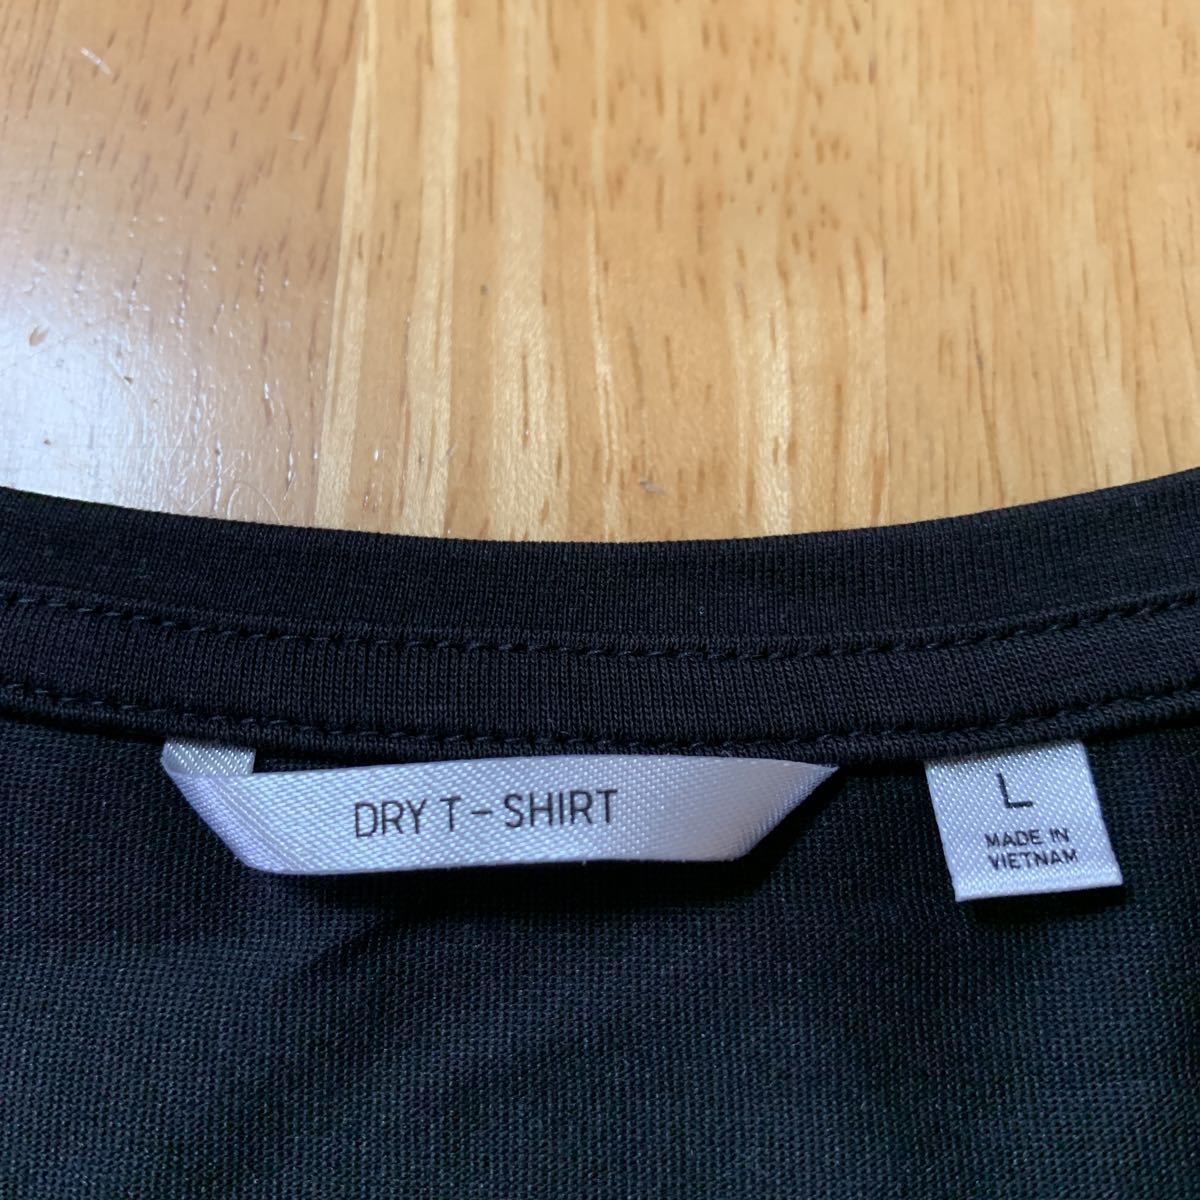  Uniqlo UNIQLO DRY T-SHIRT женский dry футболка tops черный размер L грудь 88A рост 160 1.2 раз использование прекрасный товар бесплатная доставка 